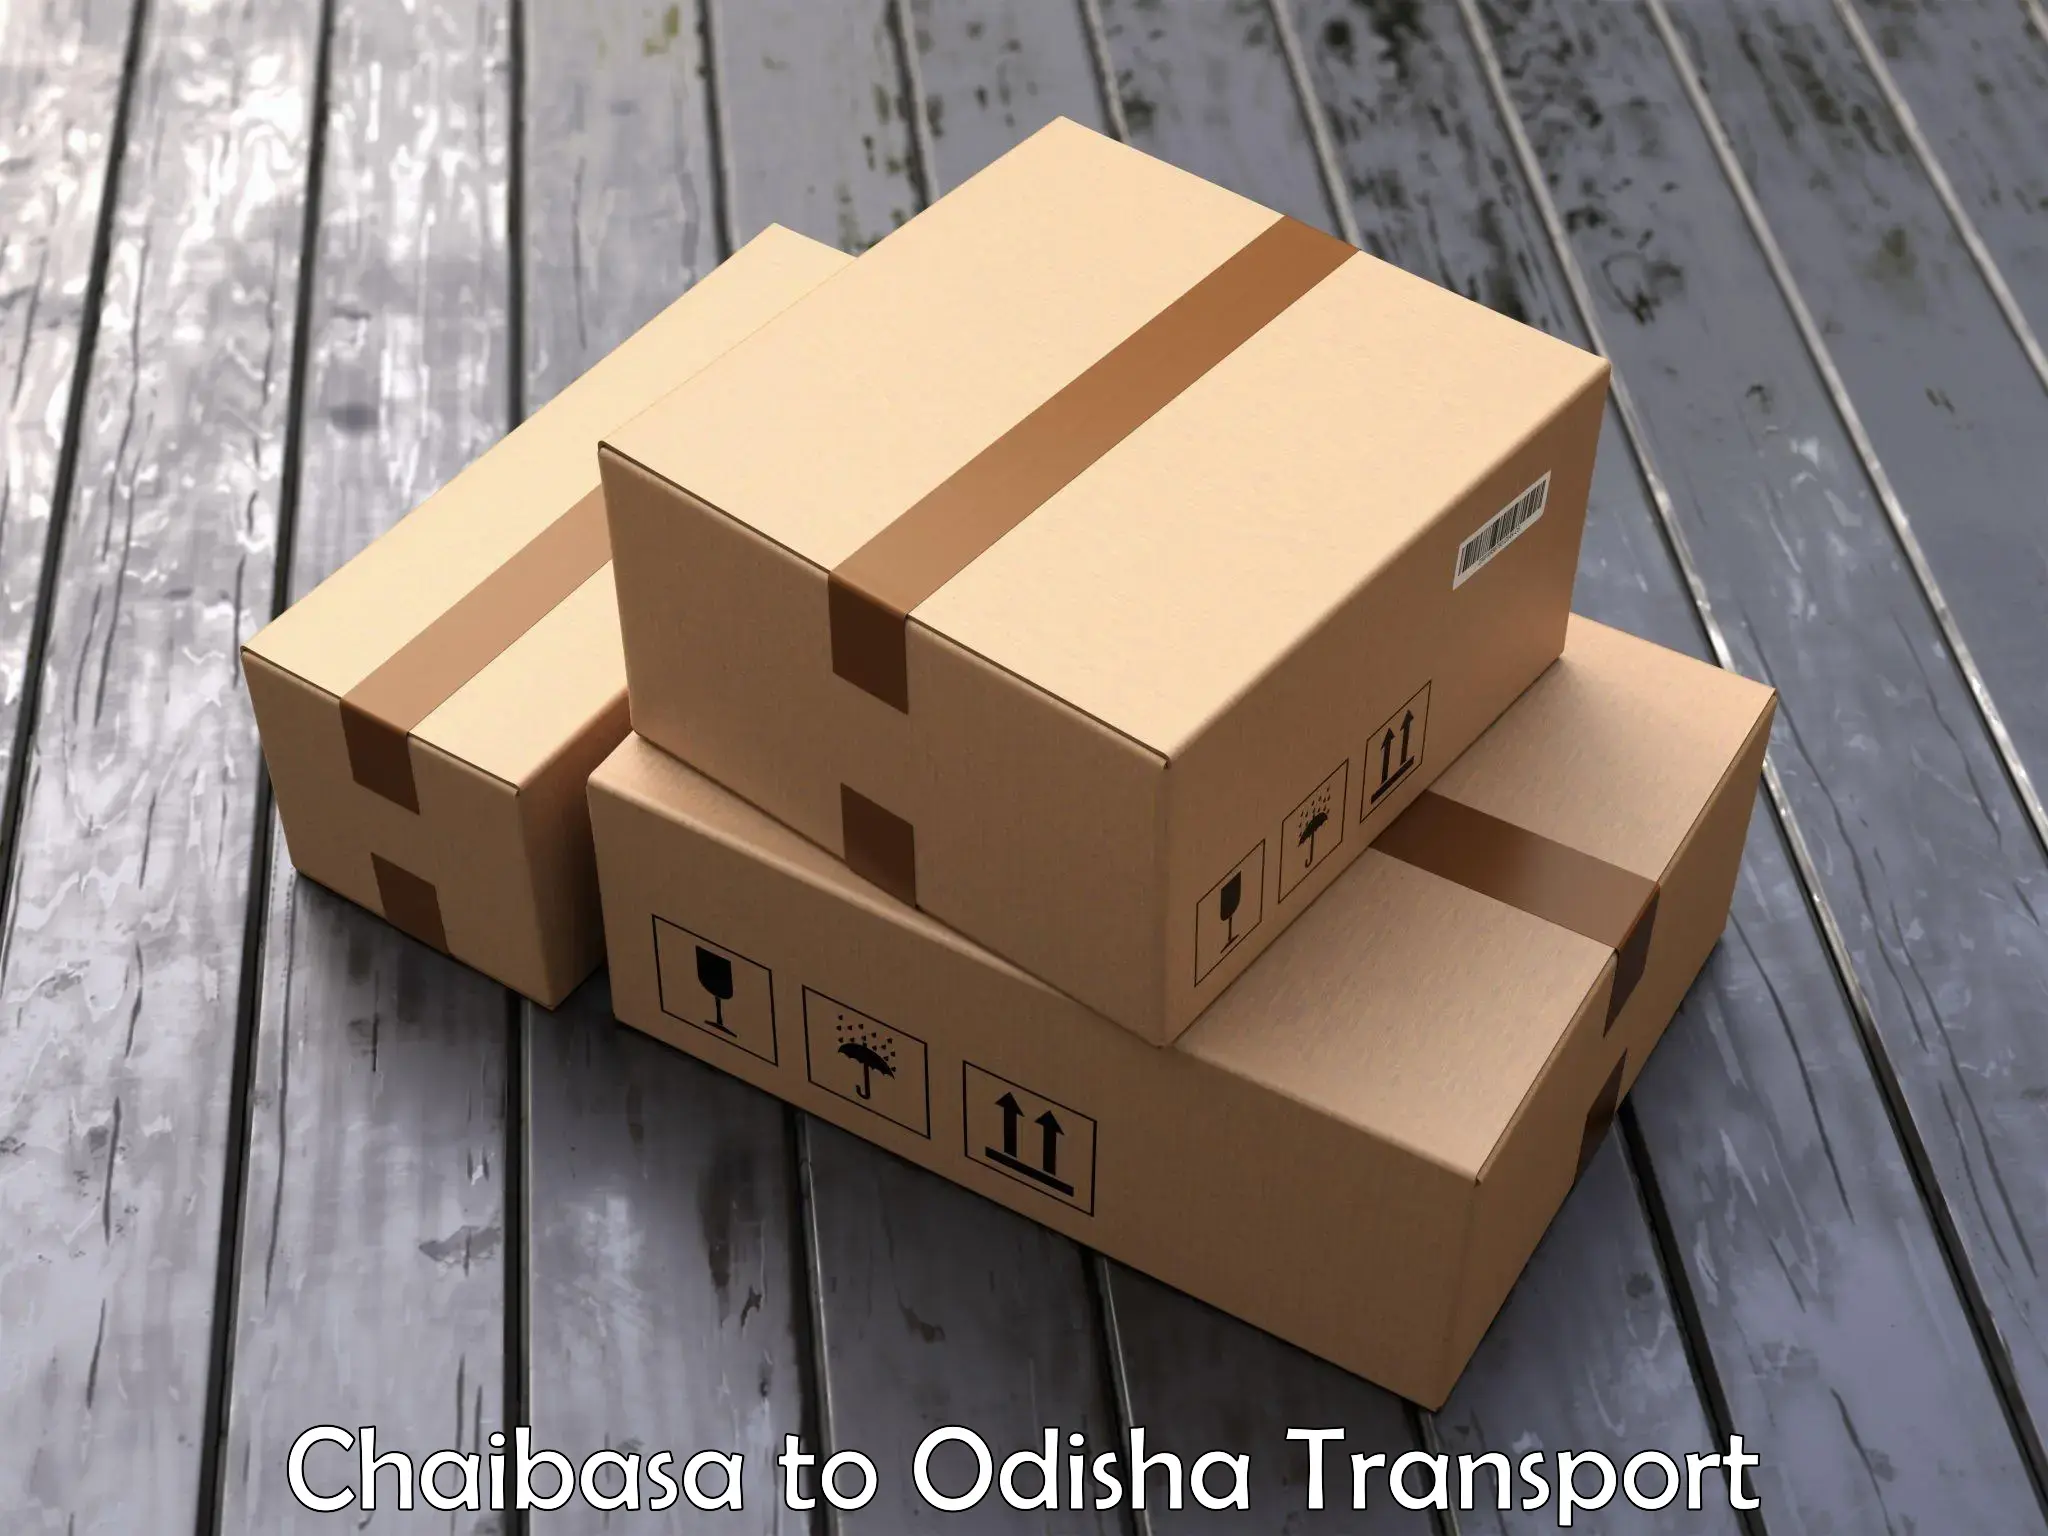 Truck transport companies in India Chaibasa to Kuchinda